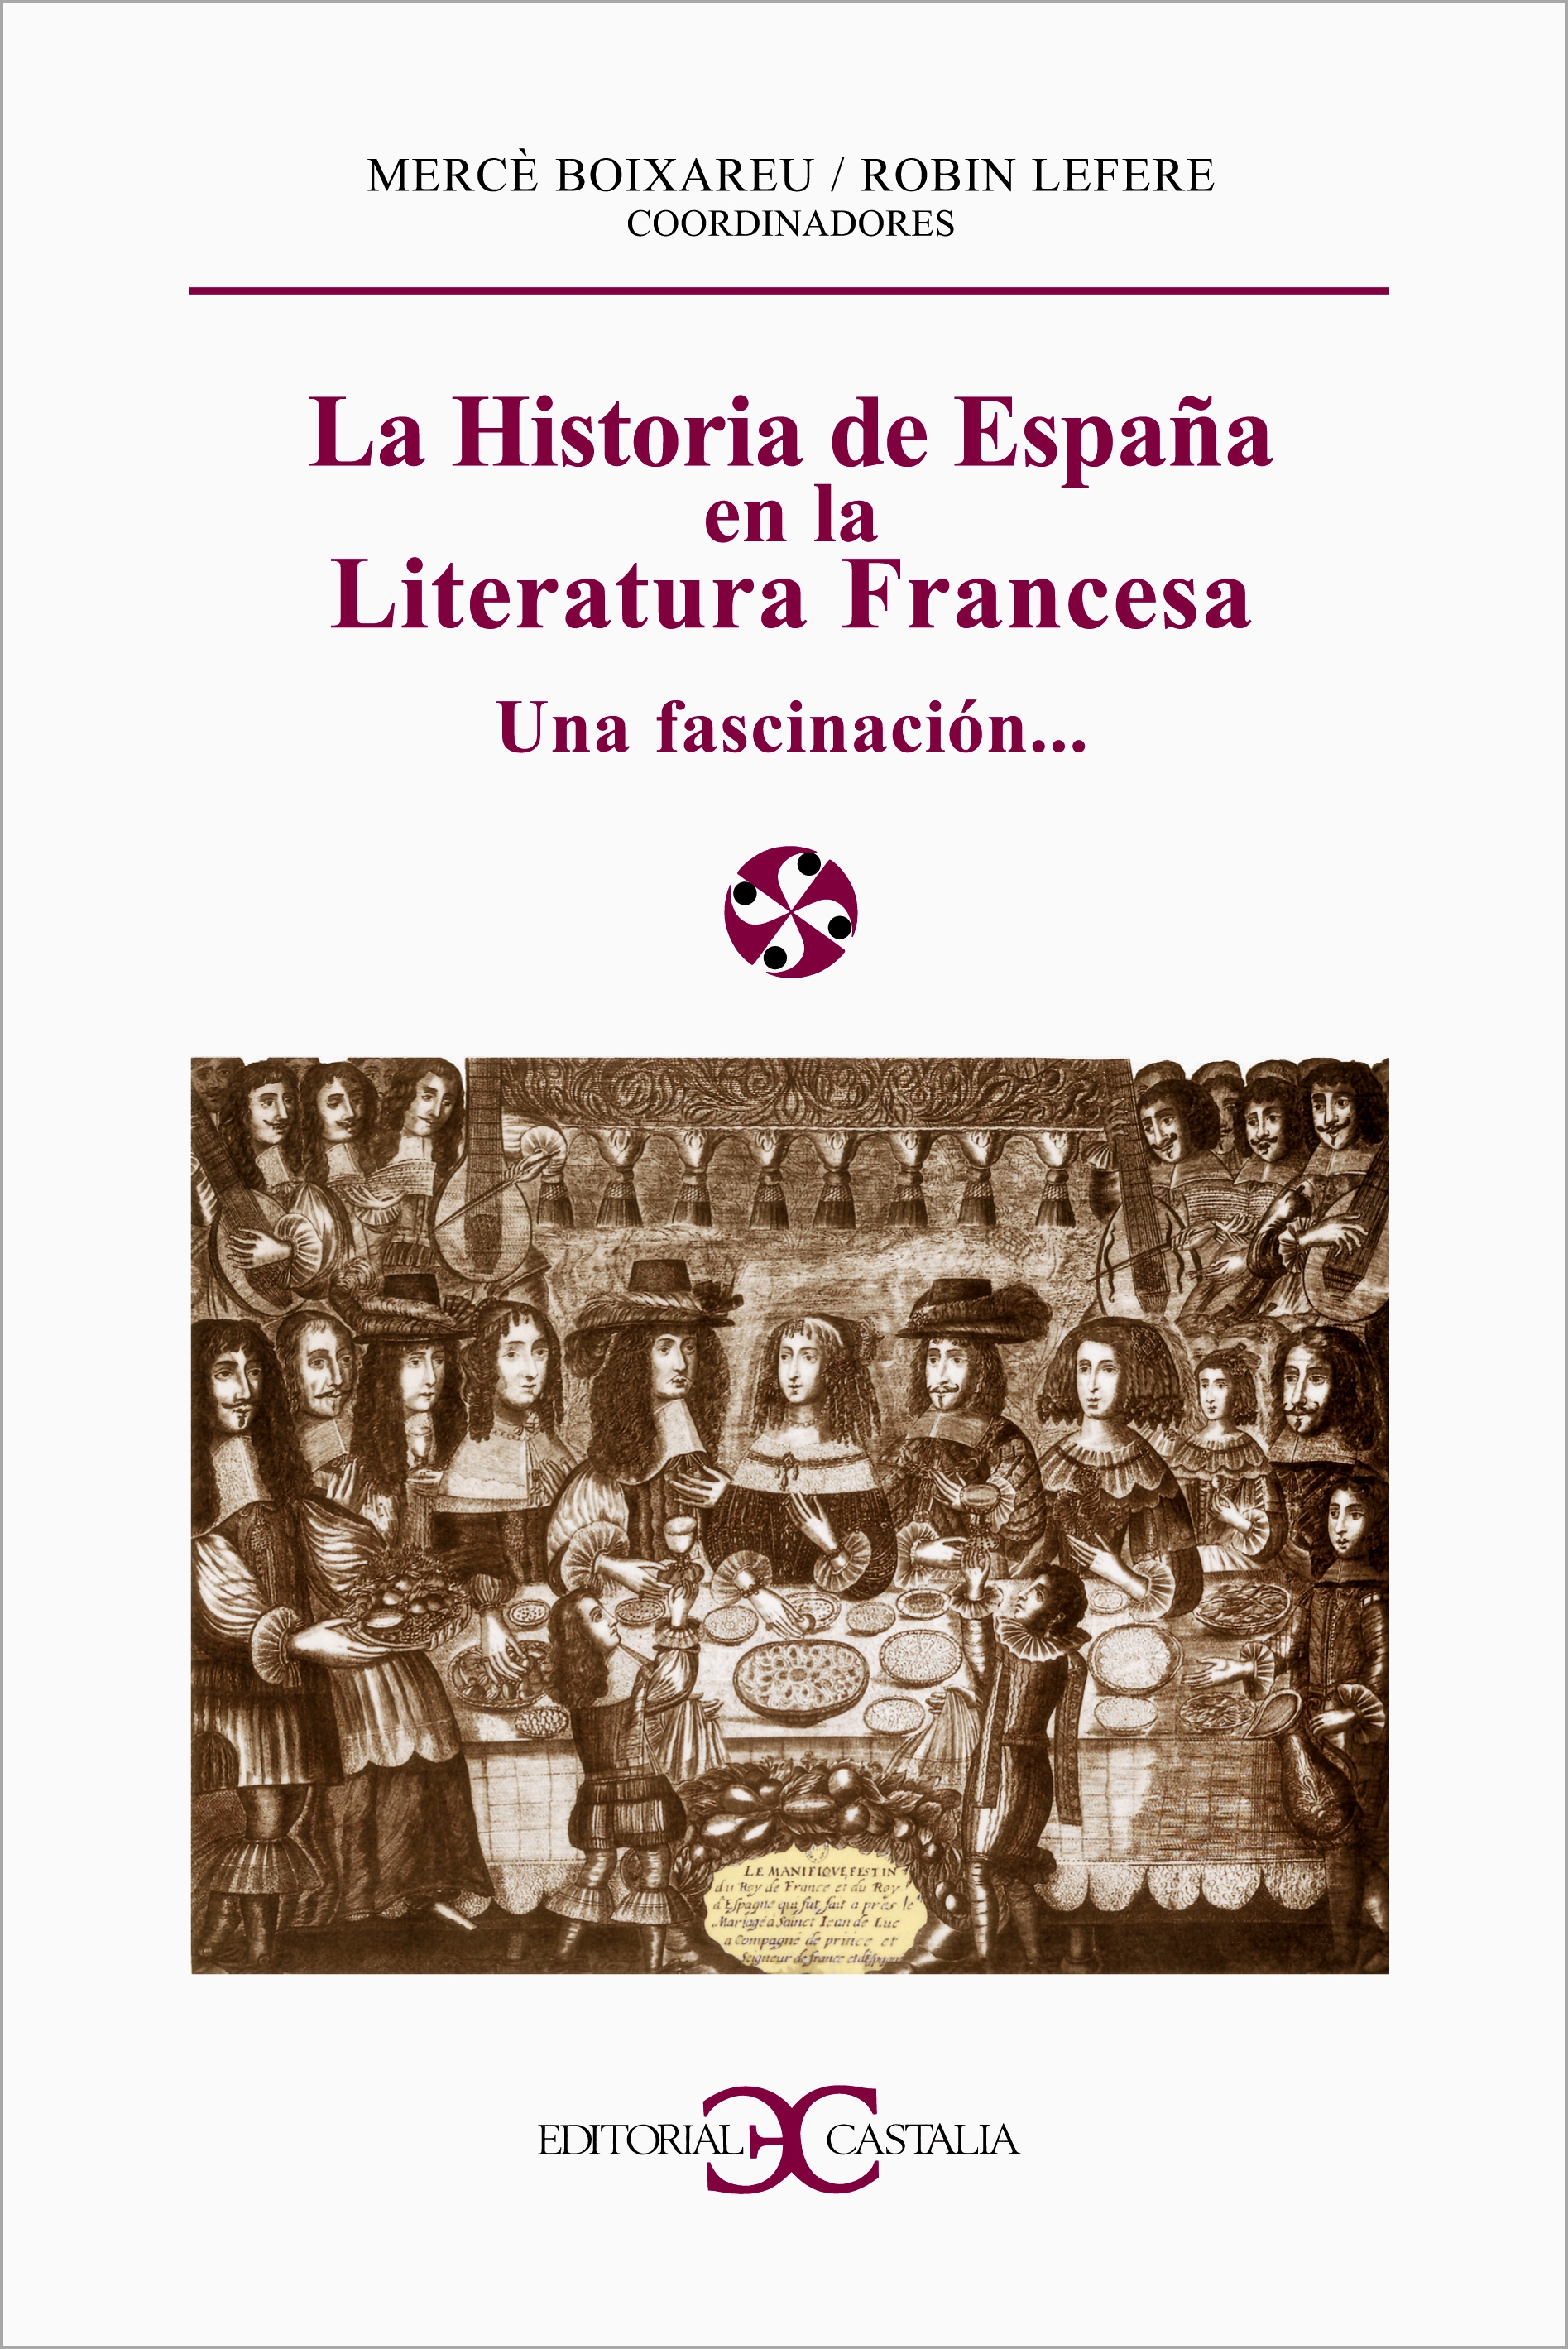 Antología del cuento español. 1900-1939